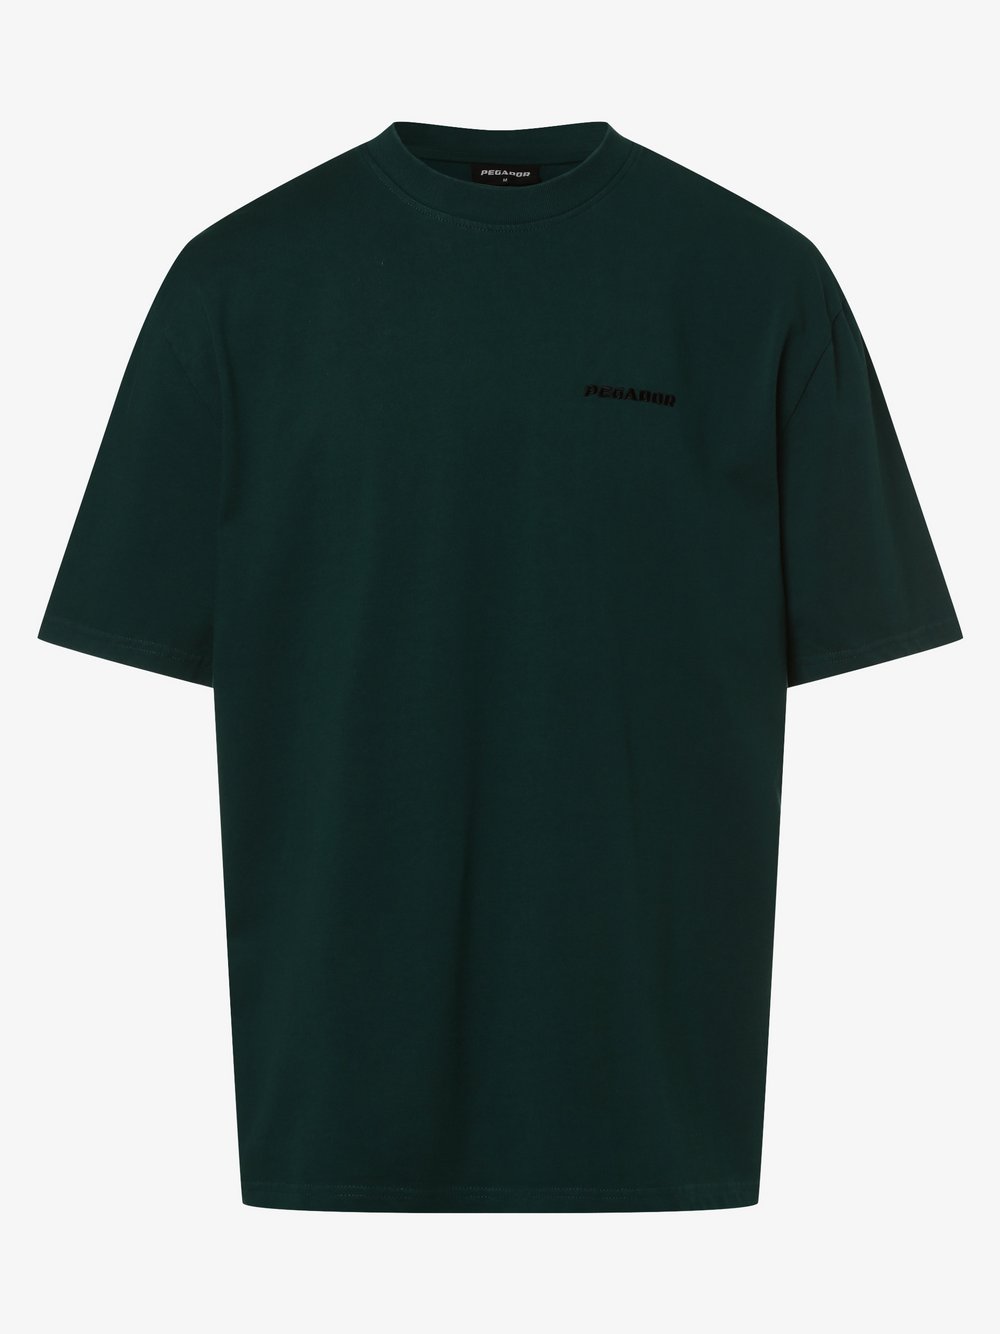 PEGADOR - T-shirt męski, zielony